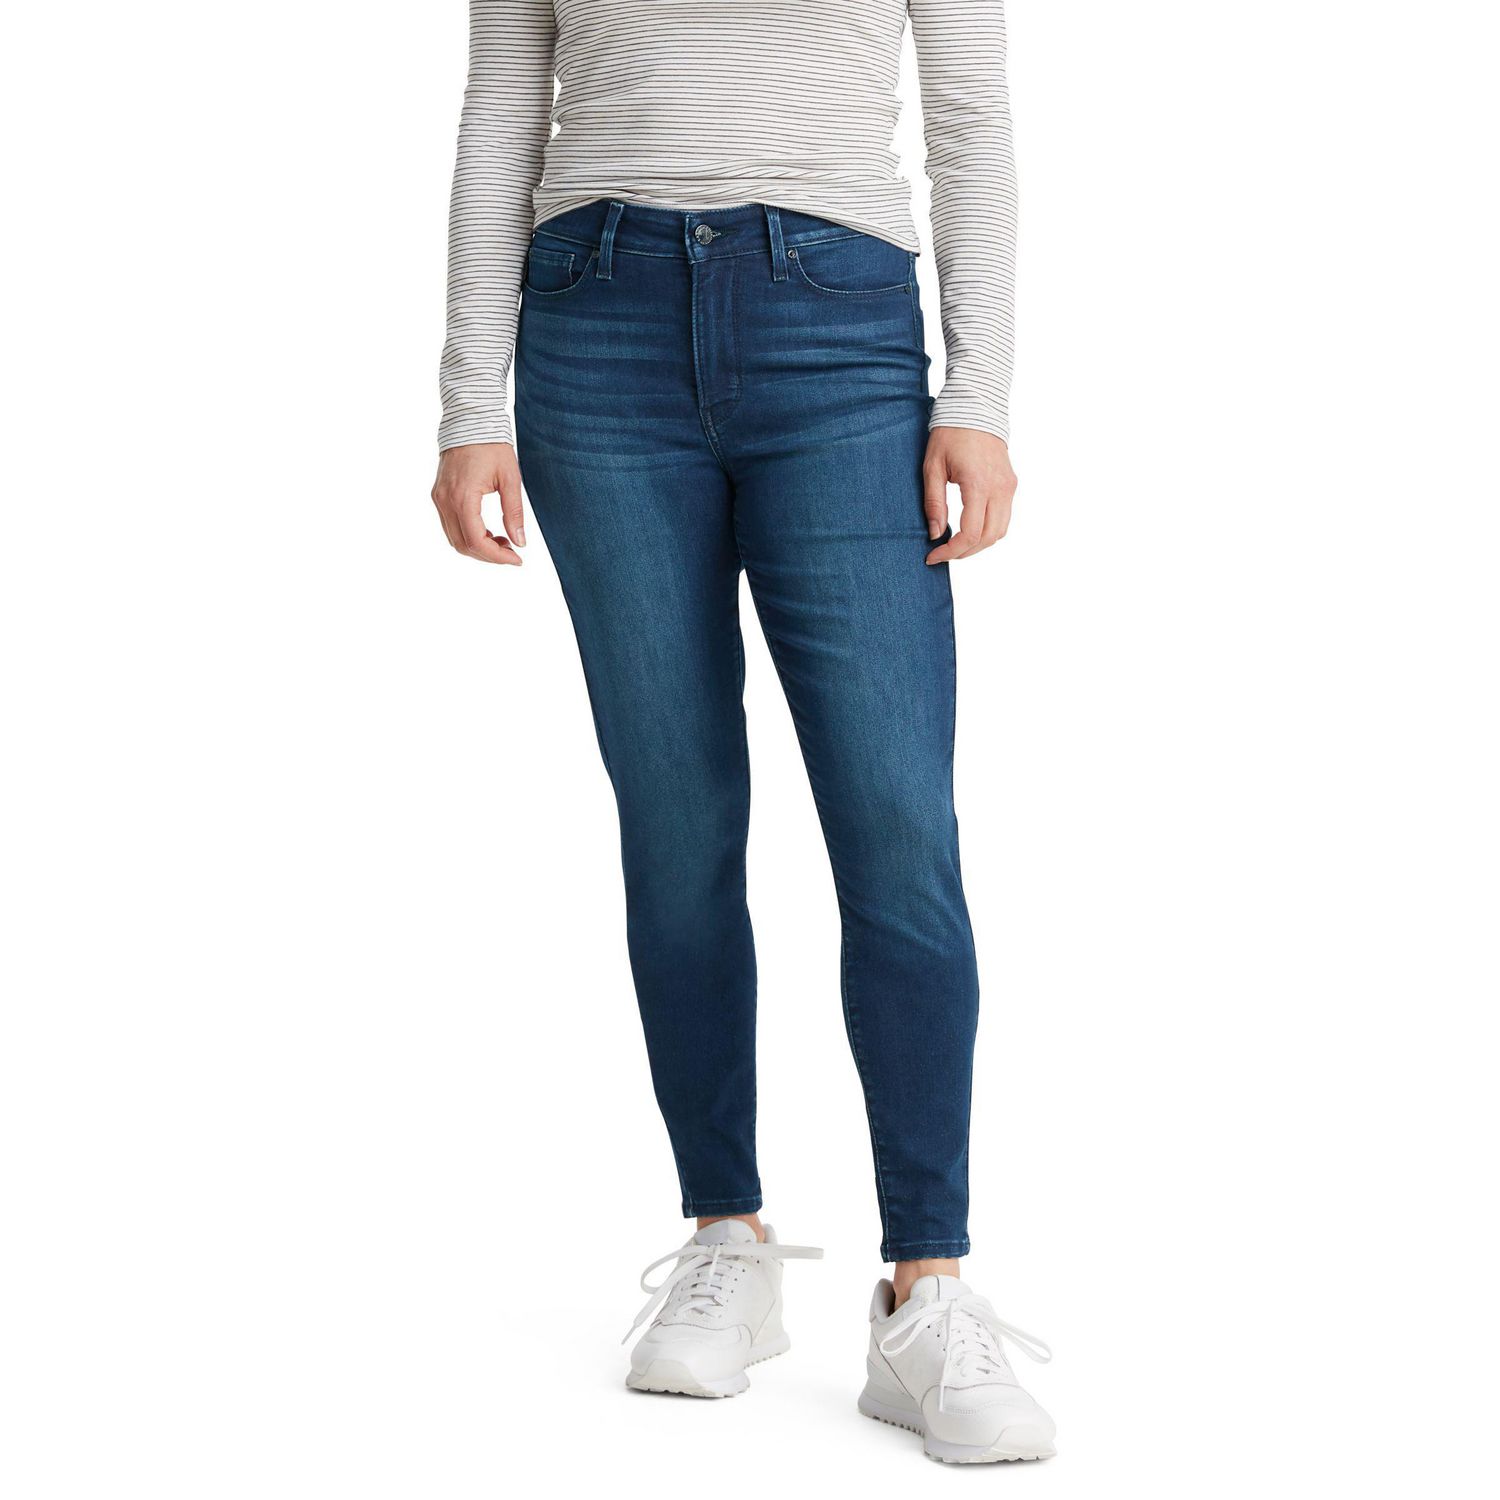 Women High Waist Jeans Fleece Lined Trousers Winter Warm Slim Stretch Pants